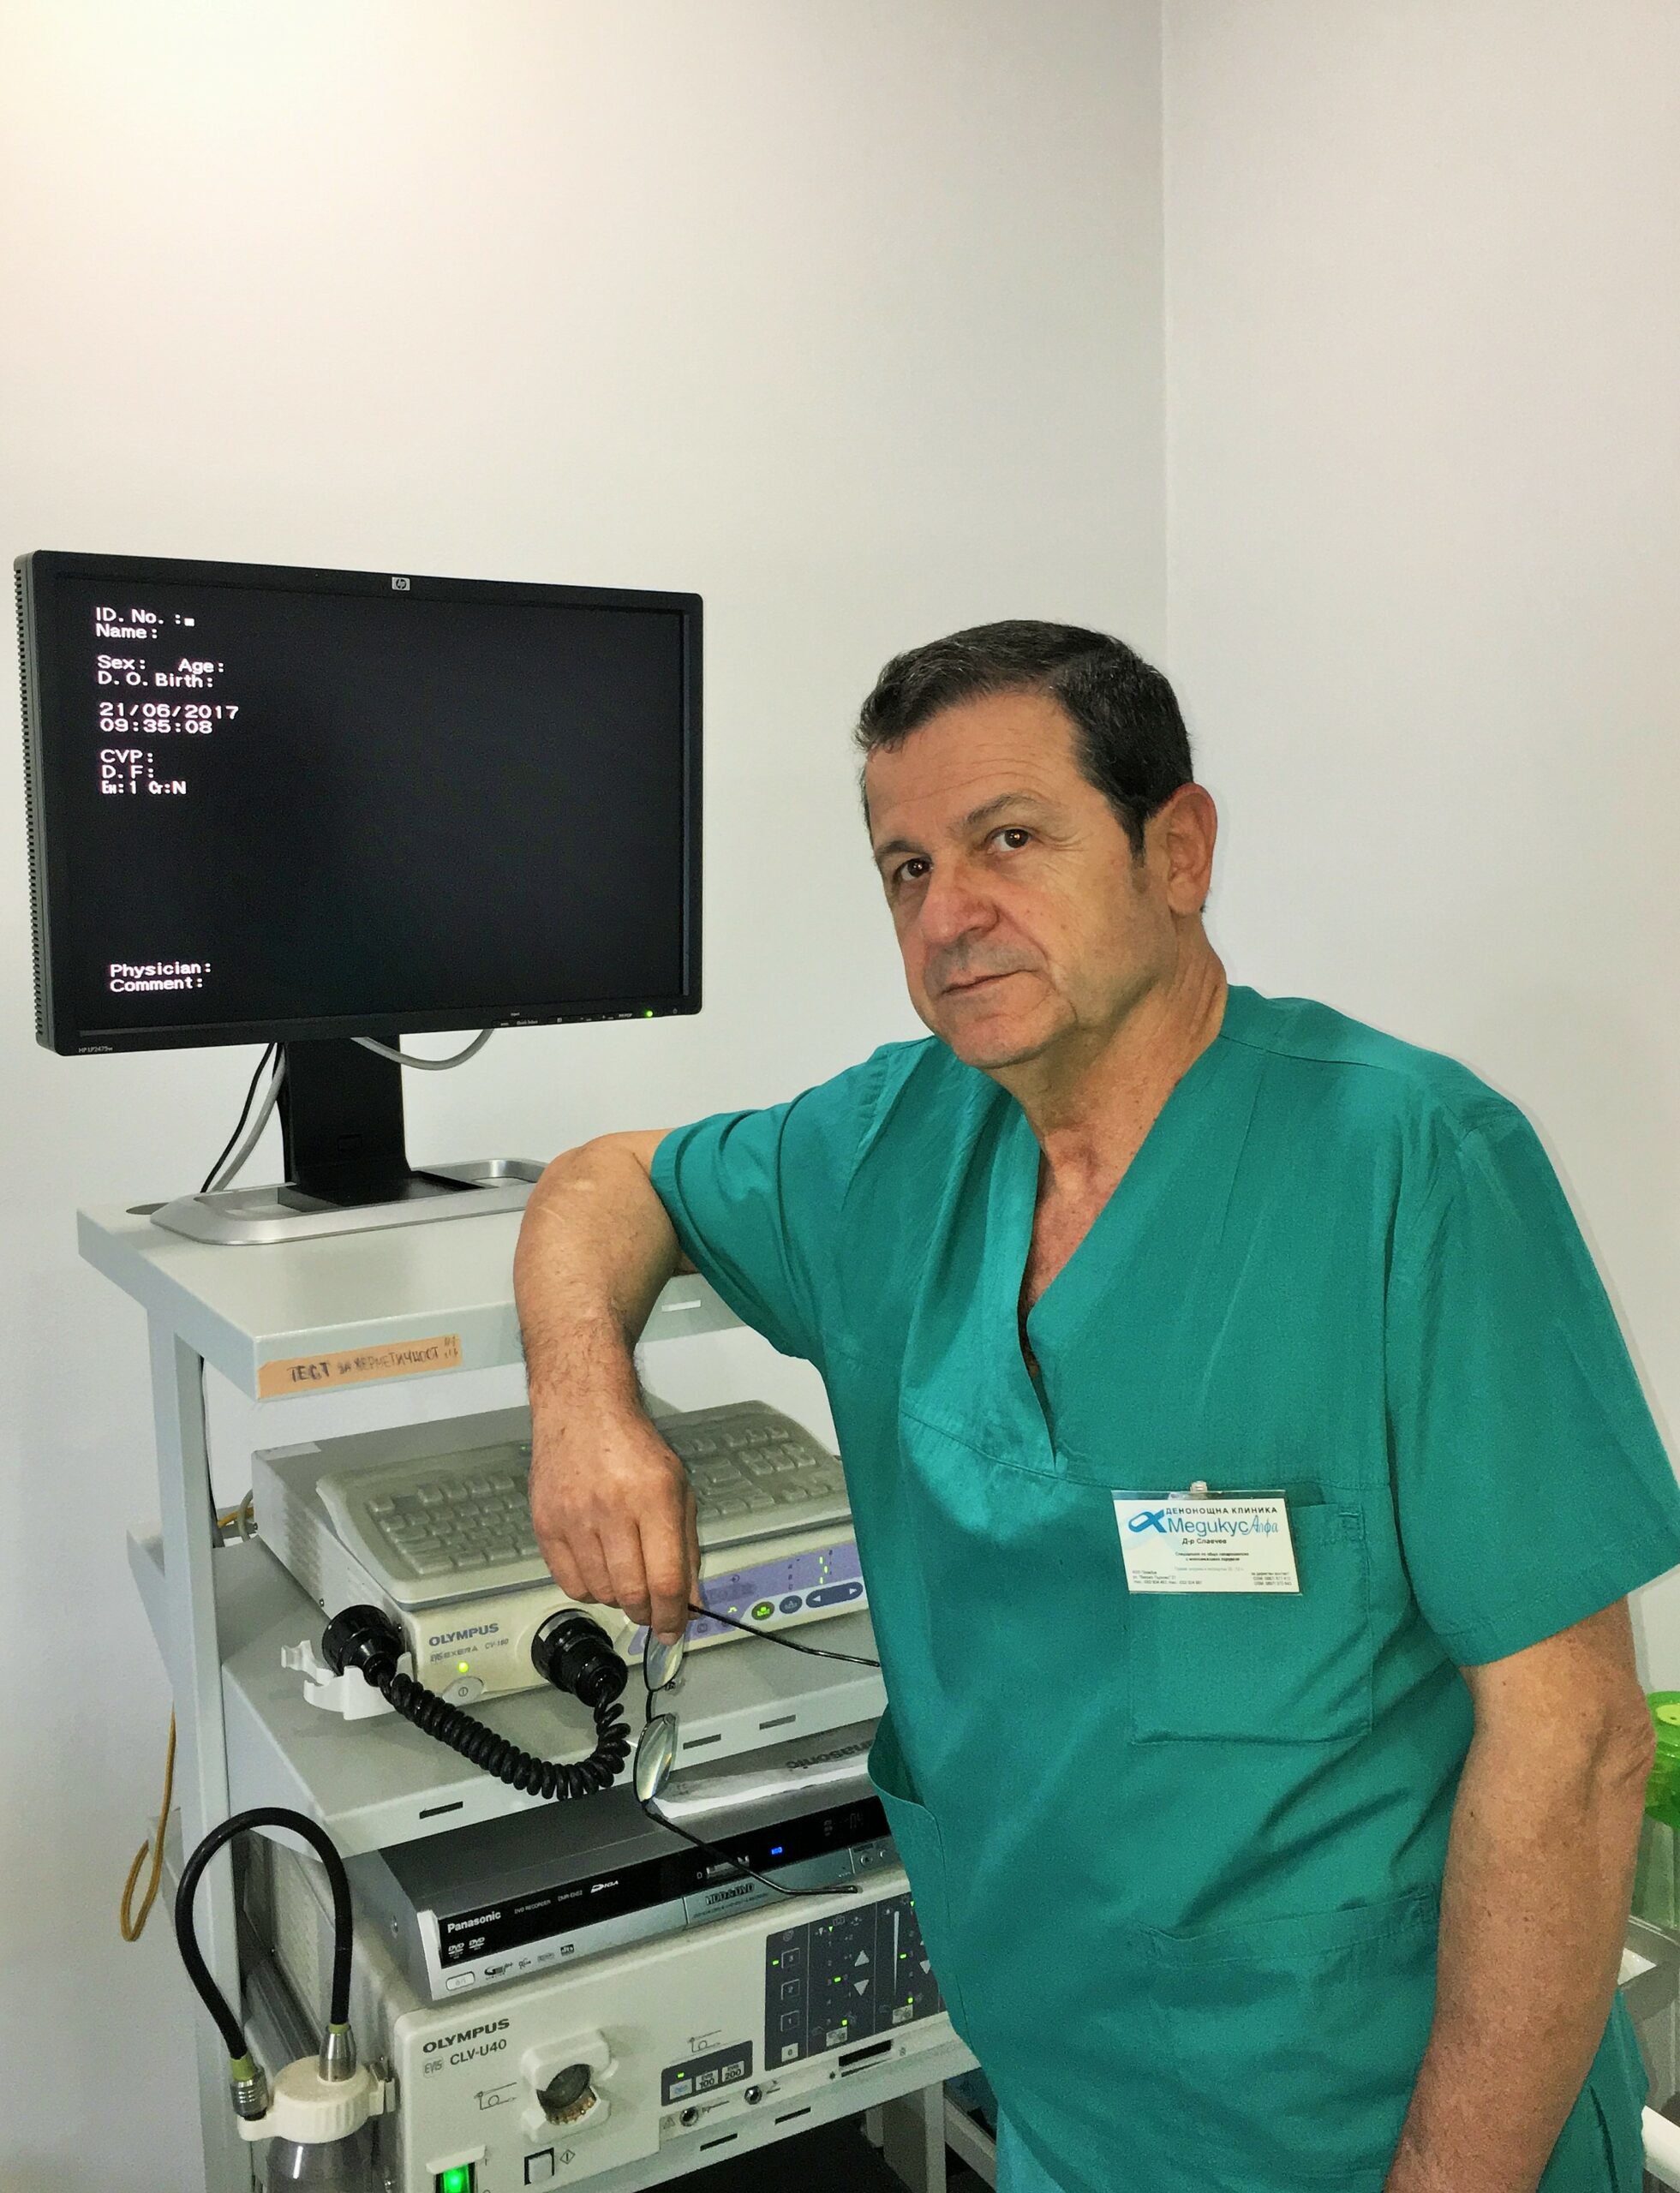 Лапароскопията на жлъчка в „Медикус Алфа”- Пловдив за сметка на НЗОК. Операцията при камъни в жлъчния мехур е задължителна.“, обяснява хирургът д-р Таньо Славчев. „Камъните могат да причинят запушване на жлъчните пътища с тежки усложнения, налагащи спешна оперативна интервенция.